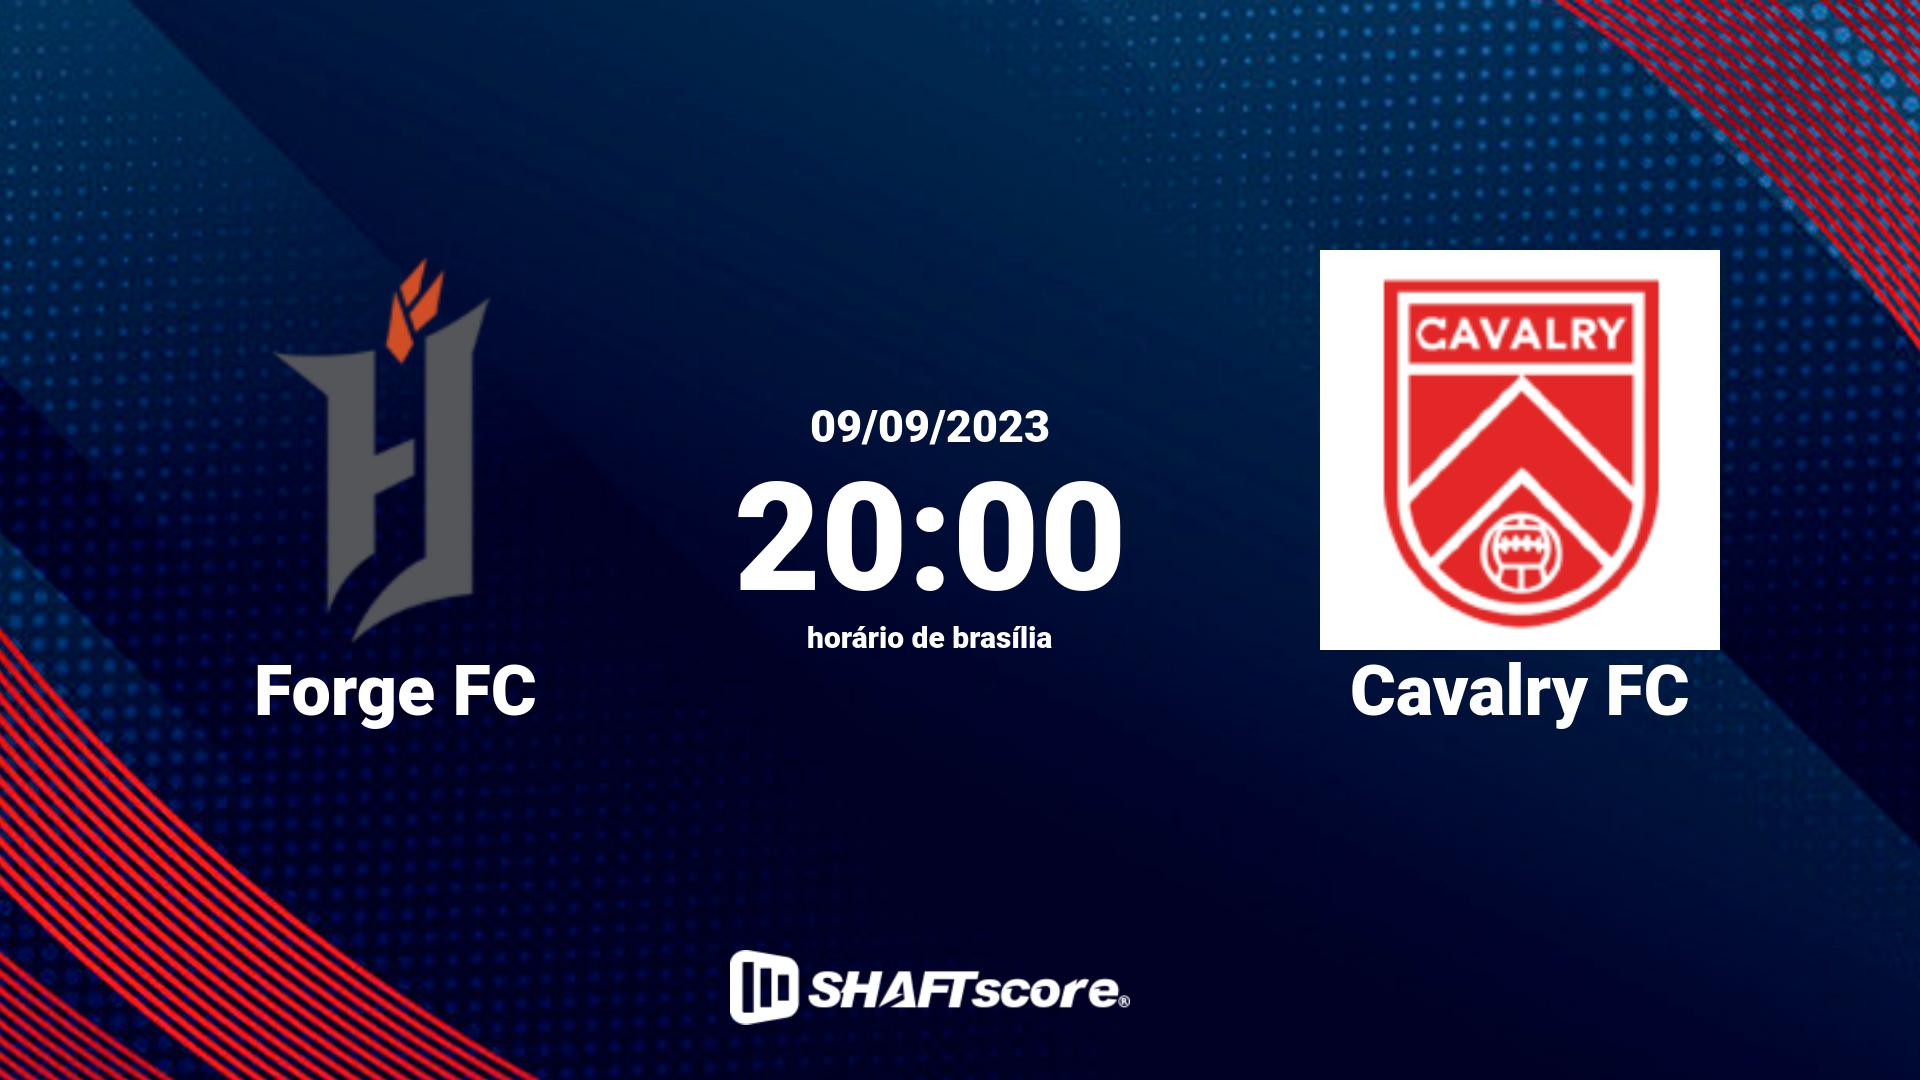 Estatísticas do jogo Forge FC vs Cavalry FC 09.09 20:00